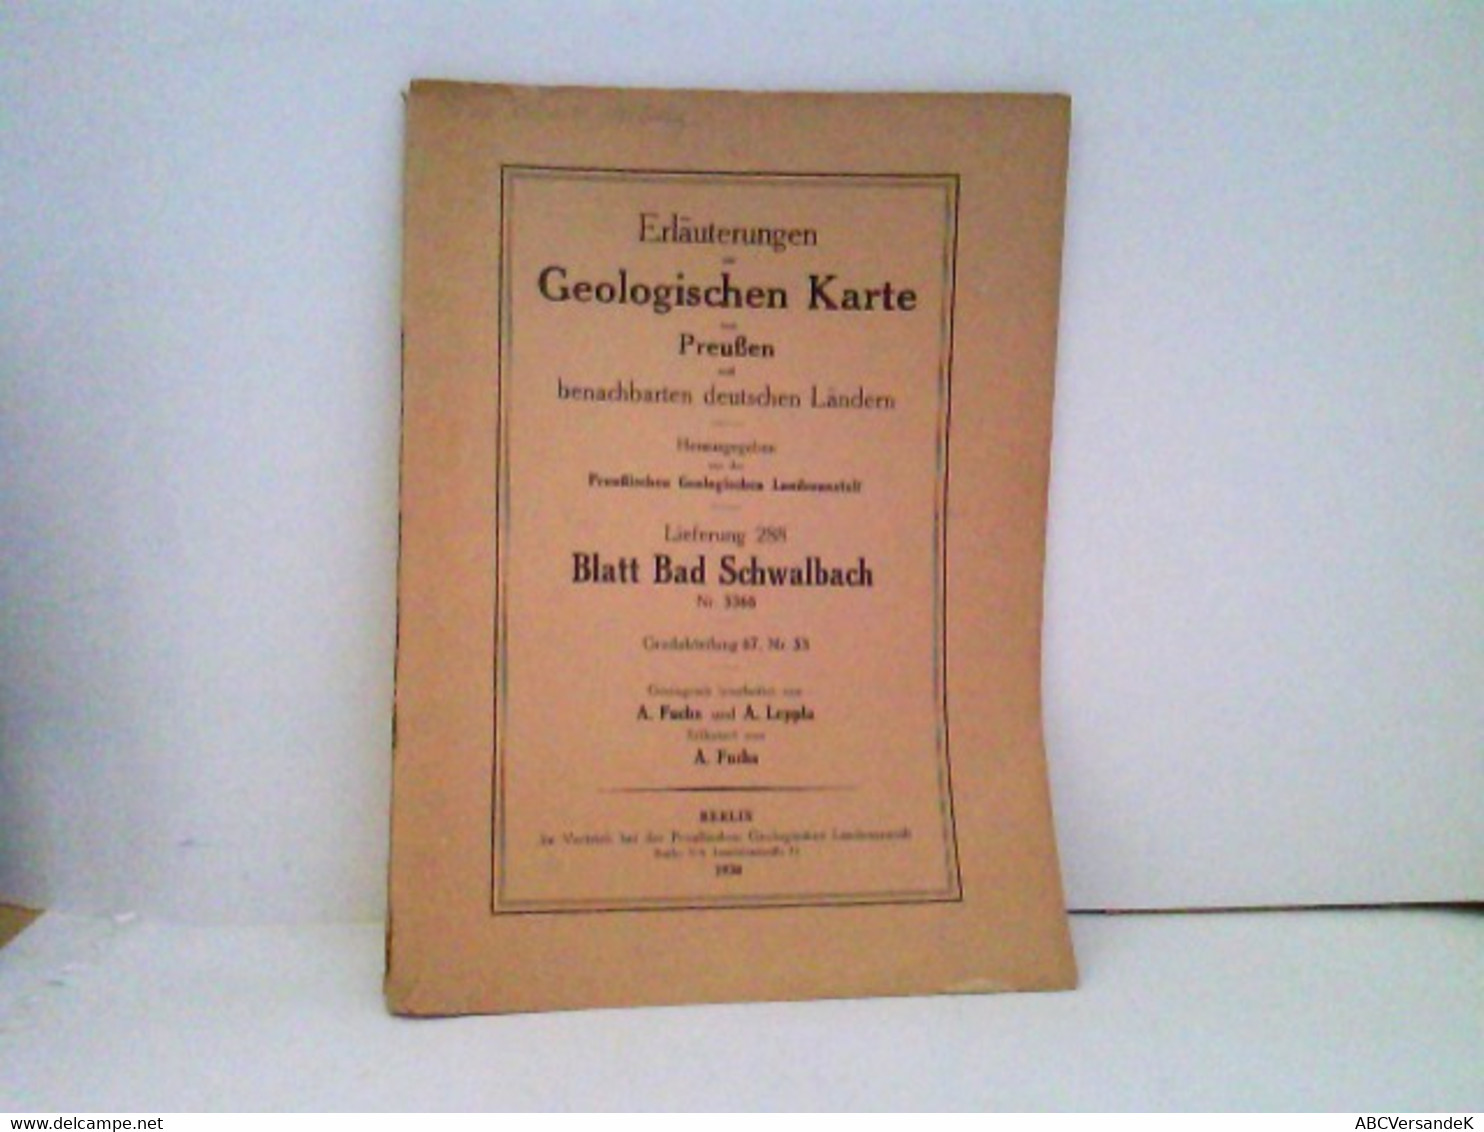 Erläuterungen Zur Geologischen Karte Von Preussen Und Benachbarten Deutschen Ländern Lieferung 288 Blatt Bad S - Hesse